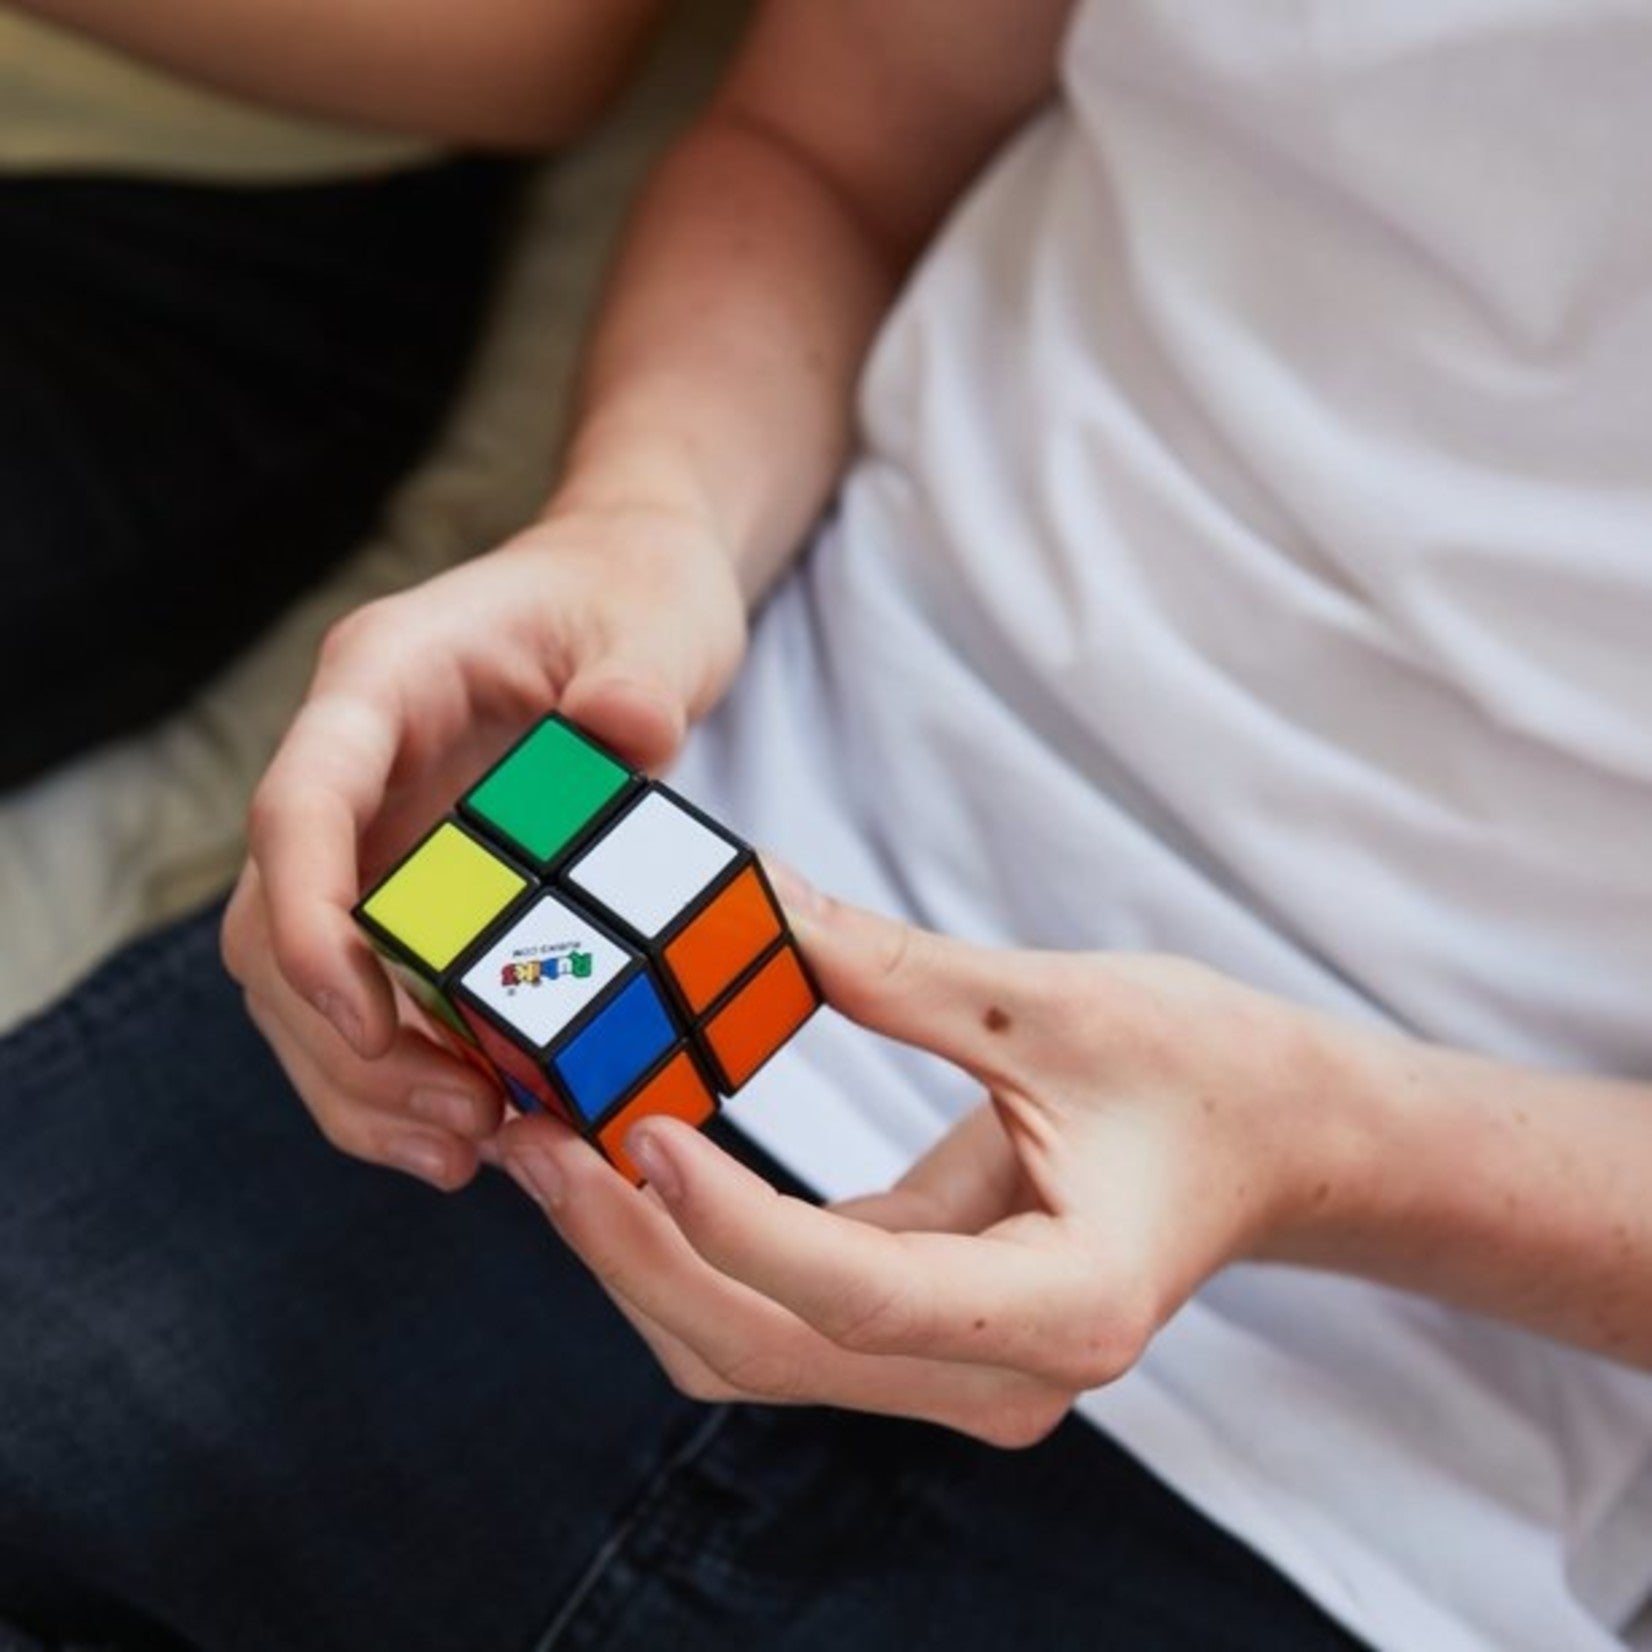 Rubik Cube 2x2 Mini